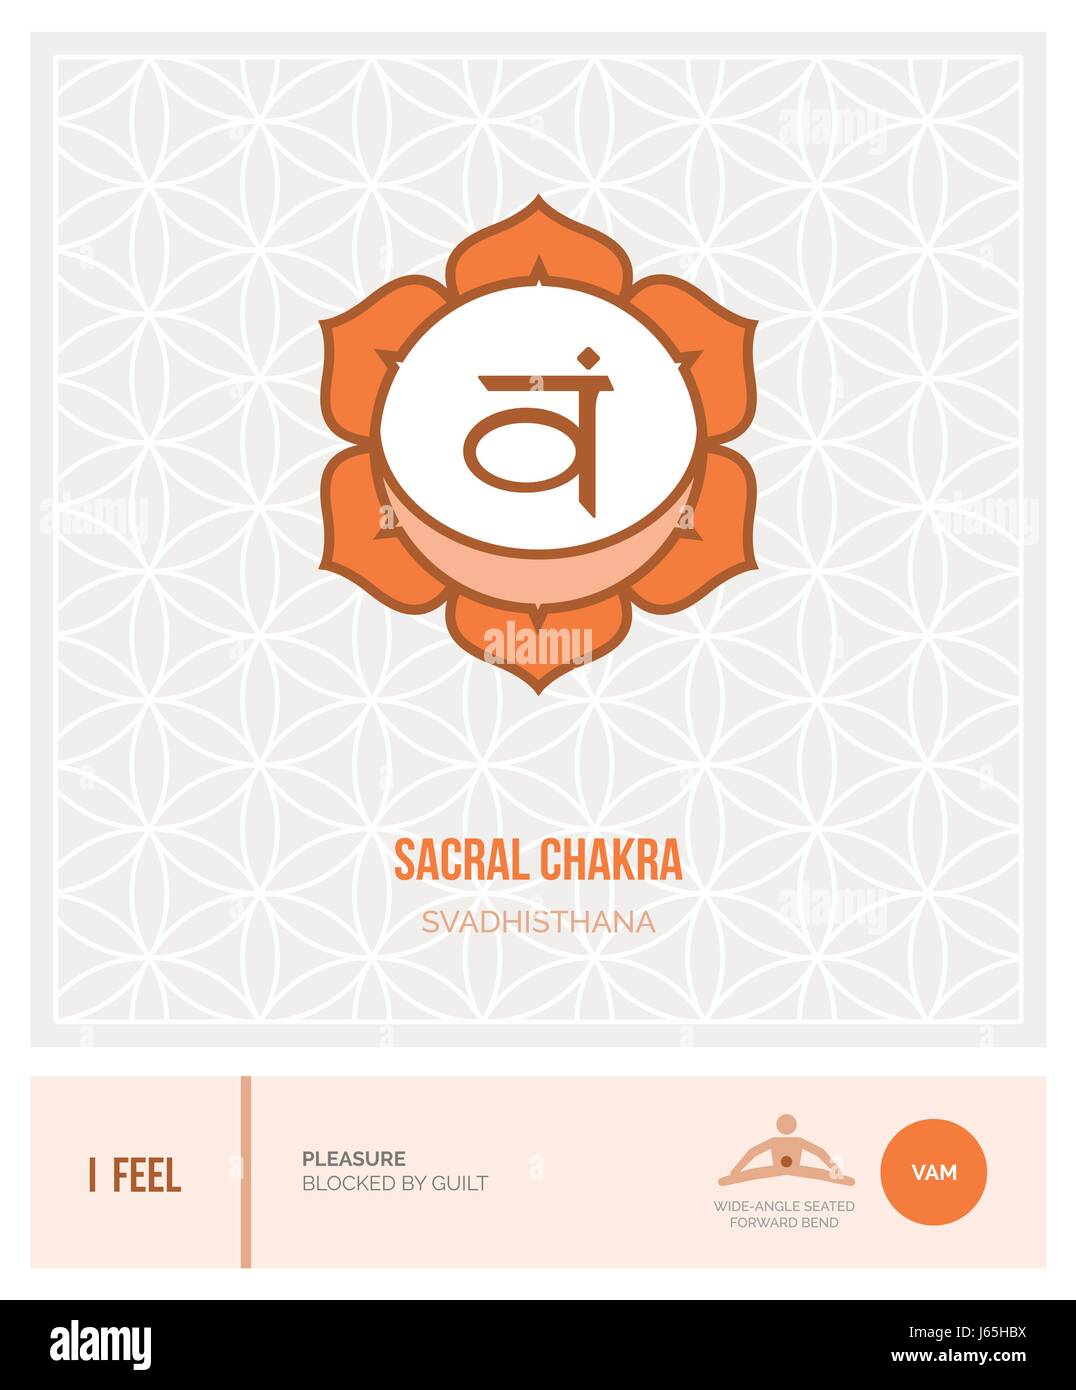 6 Yoga Poses To Open Your Sacral Chakra | mindbodygreen